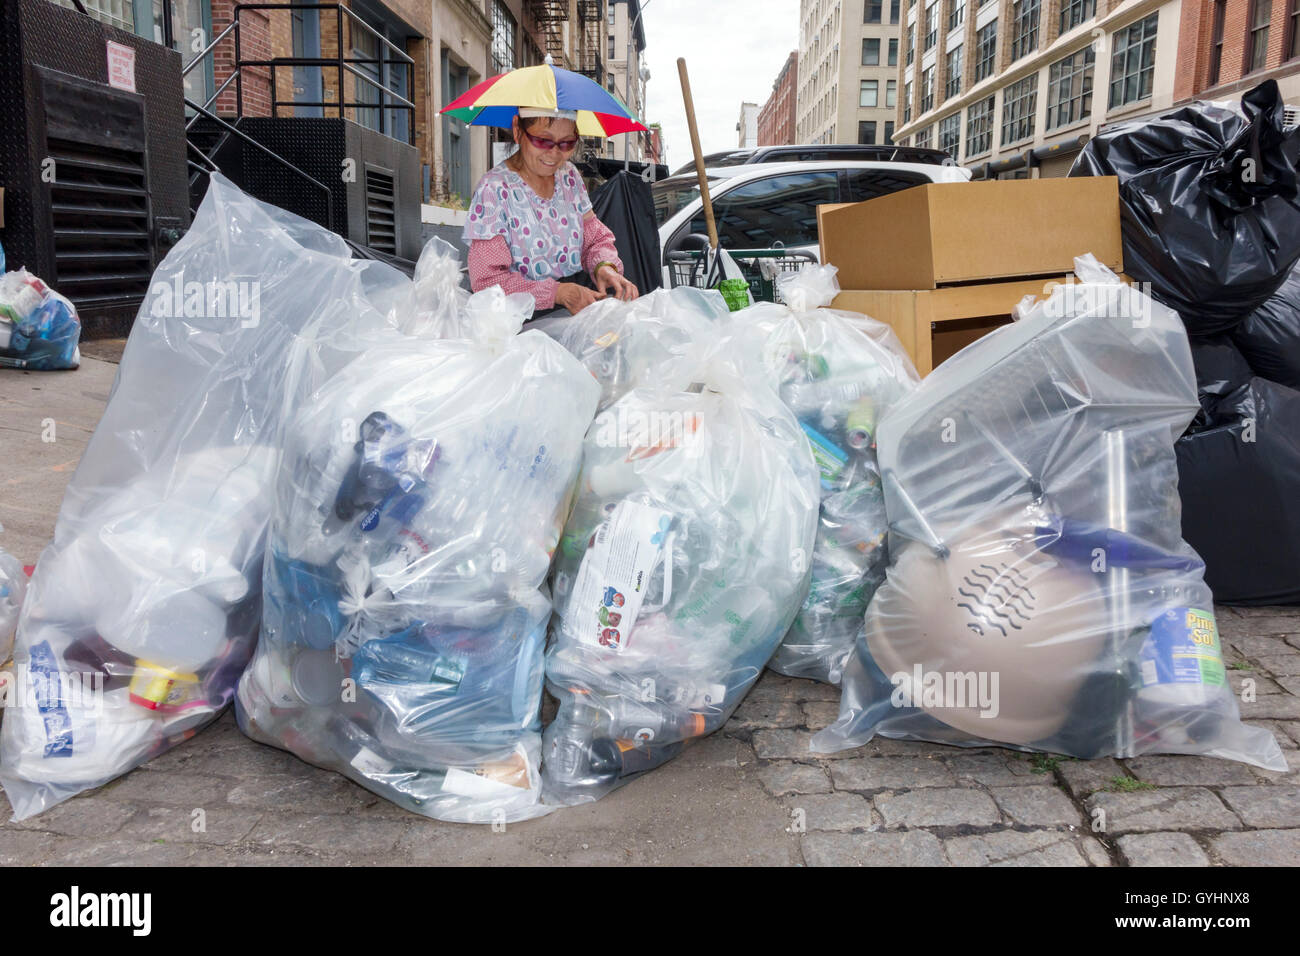 New York City,NY NYC Lower Manhattan,Tribeca,adulte asiatique,femme femme,mature,recyclage,sacs poubelle plastique,chapeau parapluie,NY160716114 Banque D'Images